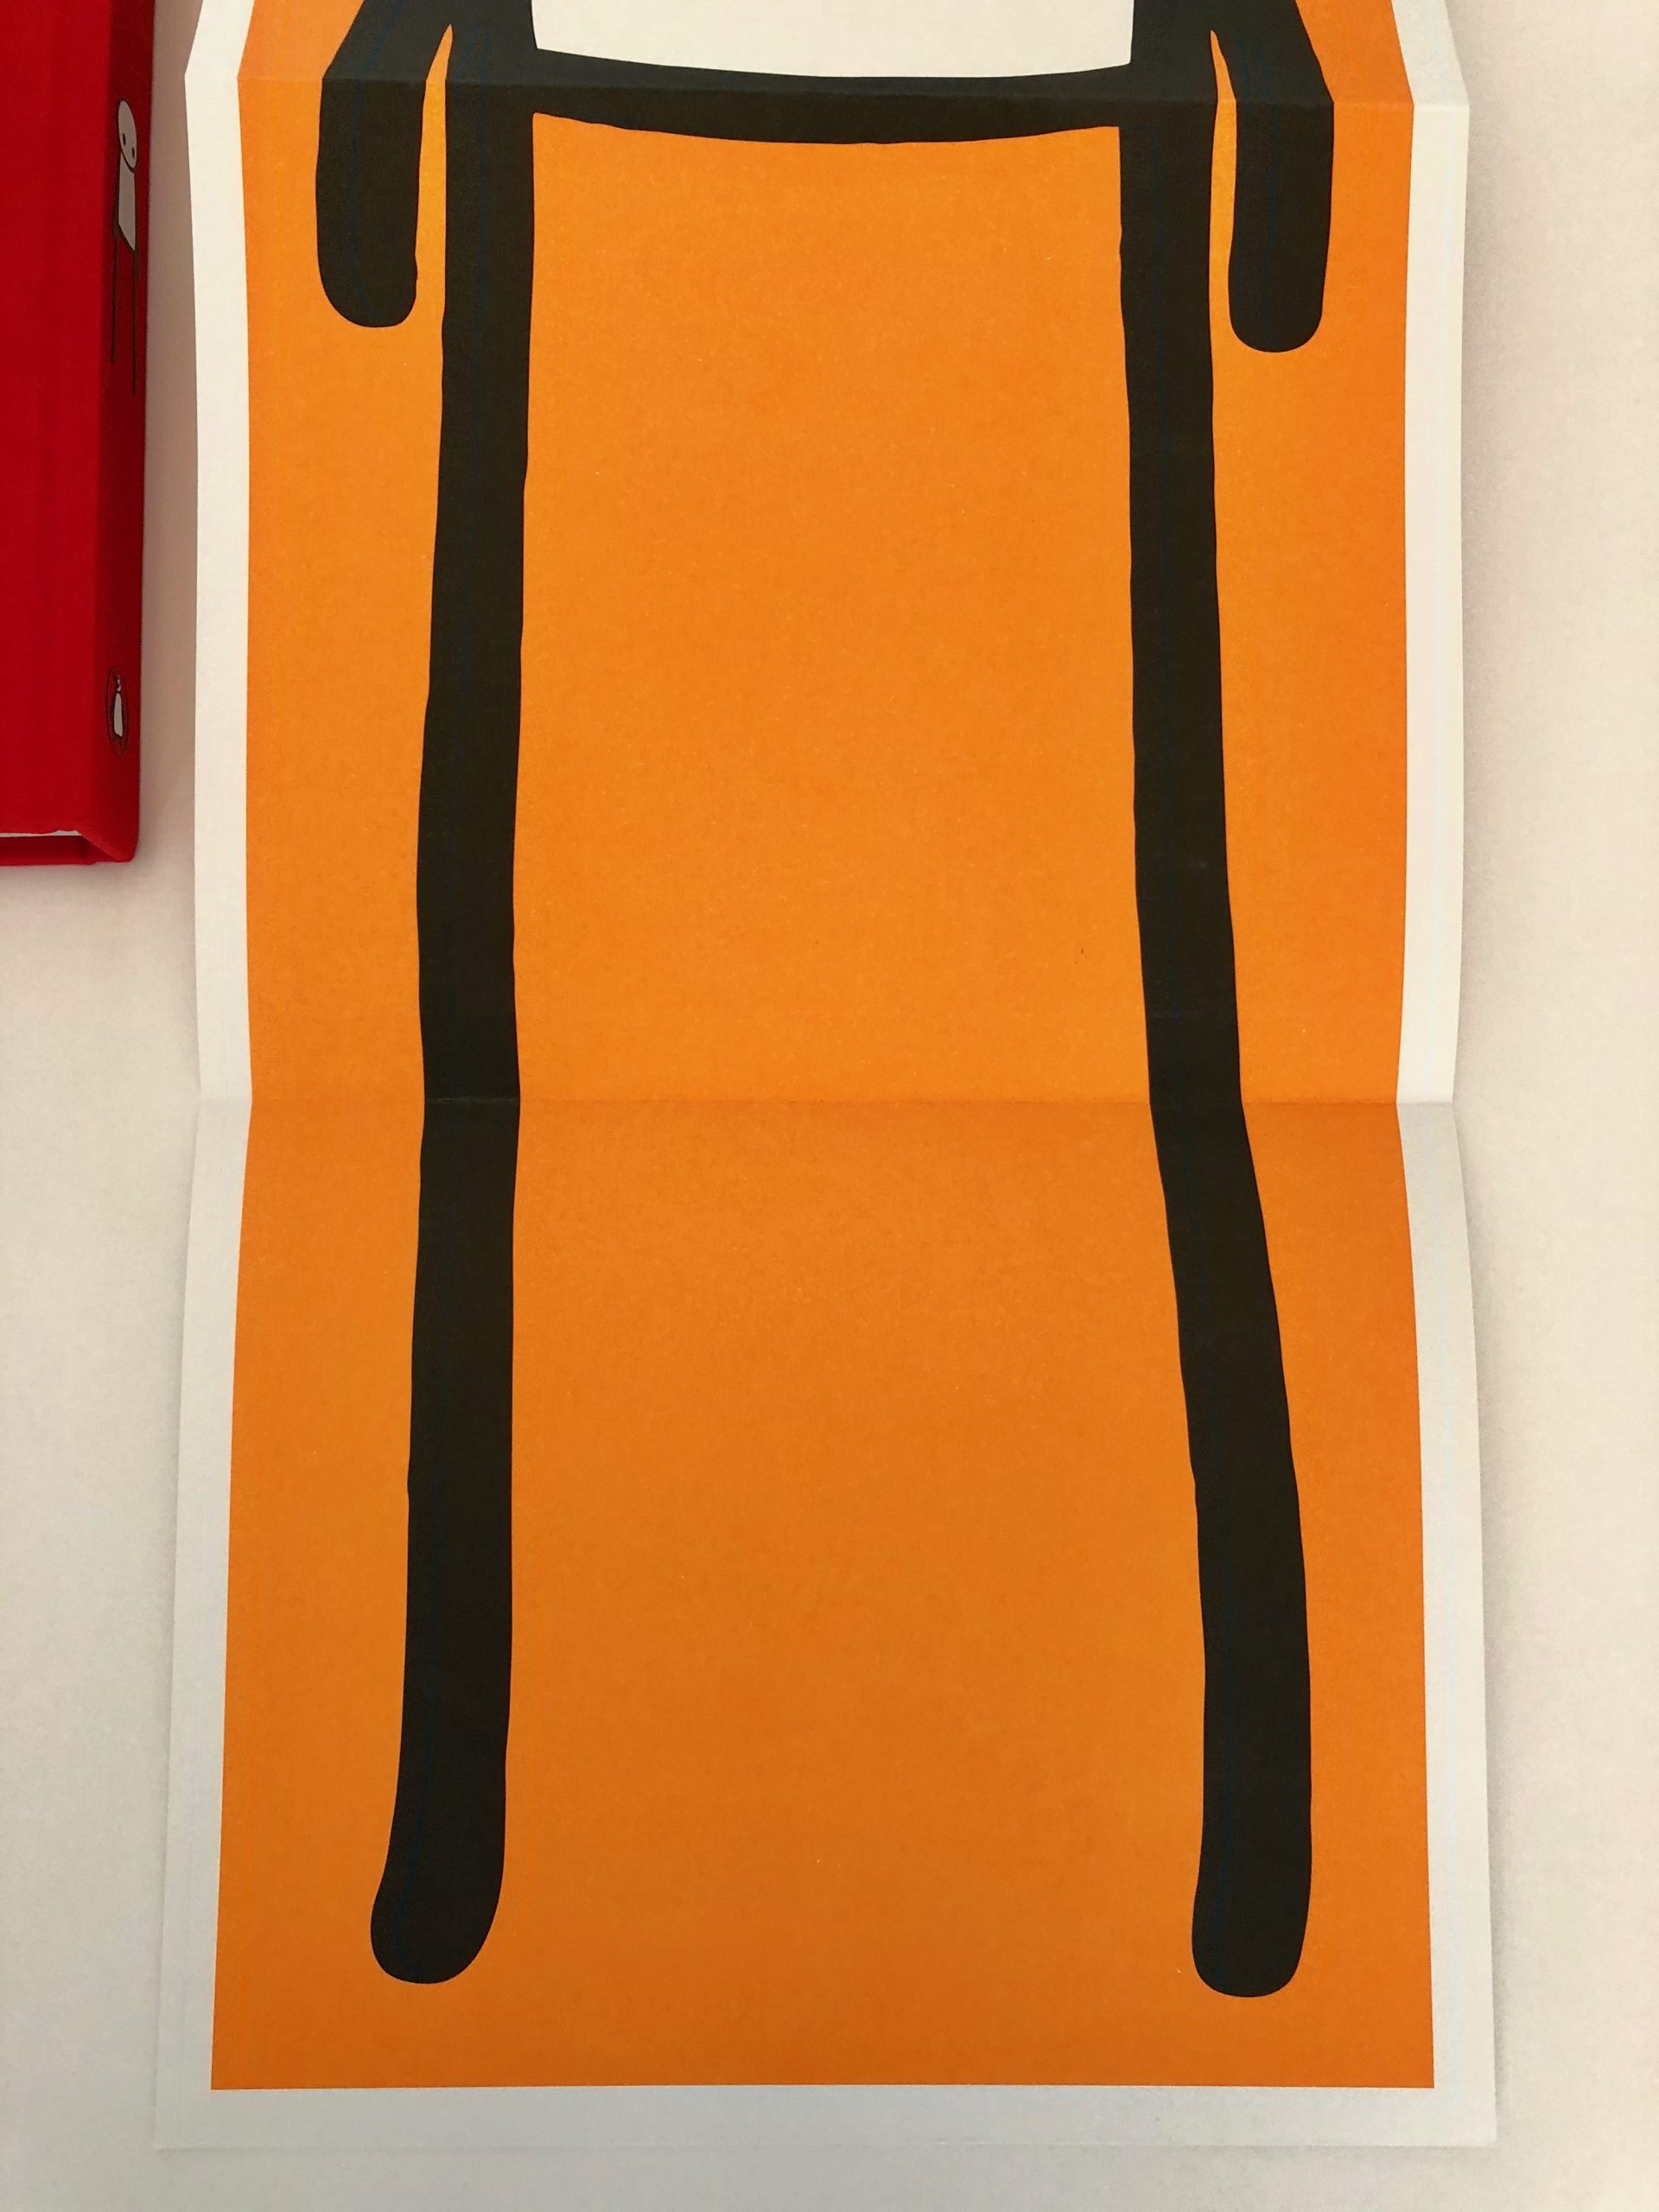 stik-orange-poster